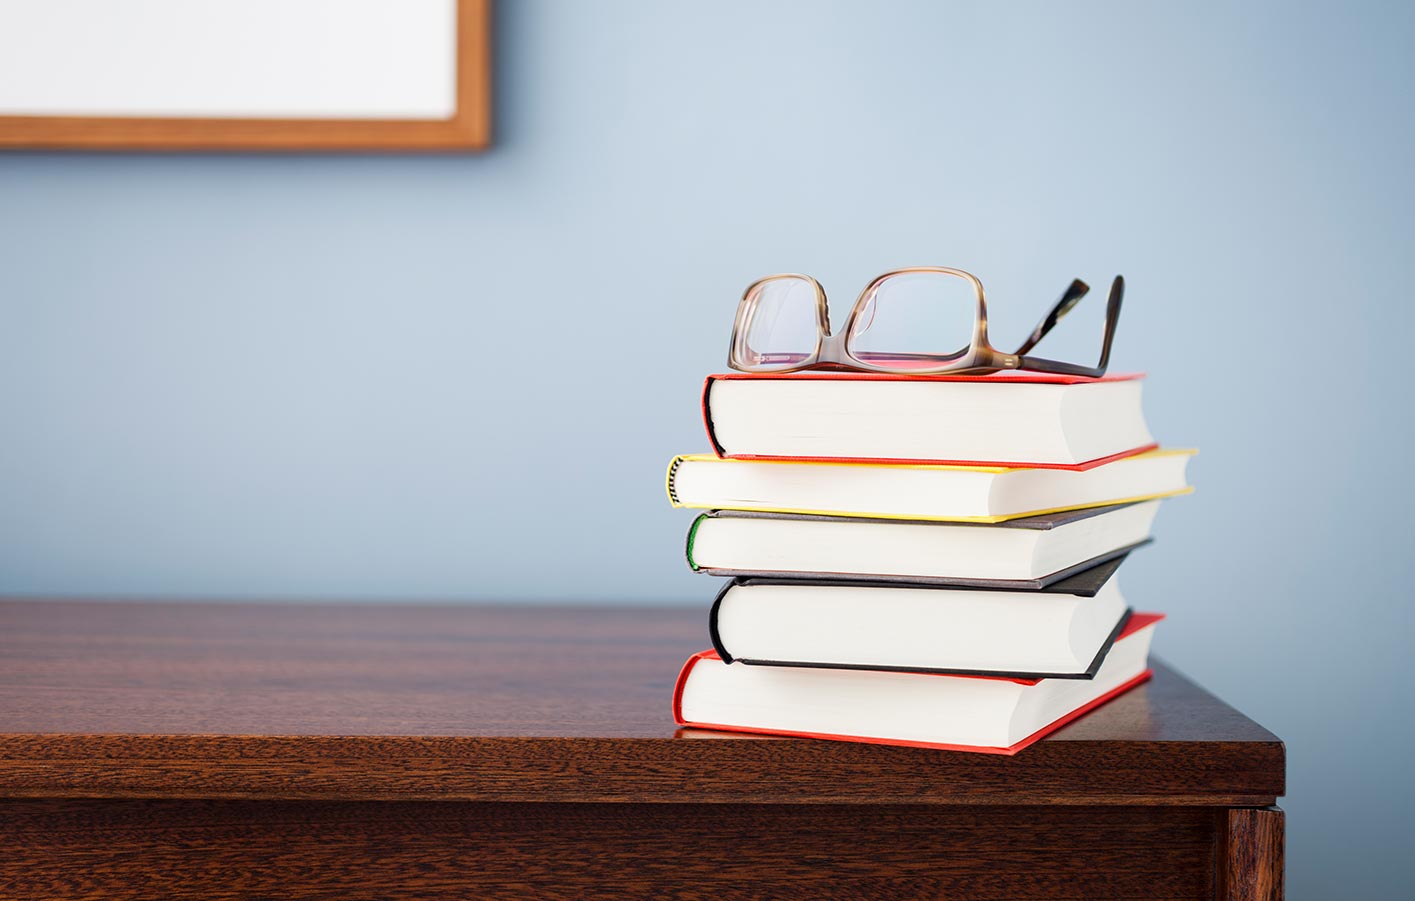 Bücherstapel auf einem Regal mit einer Brille oben drauf